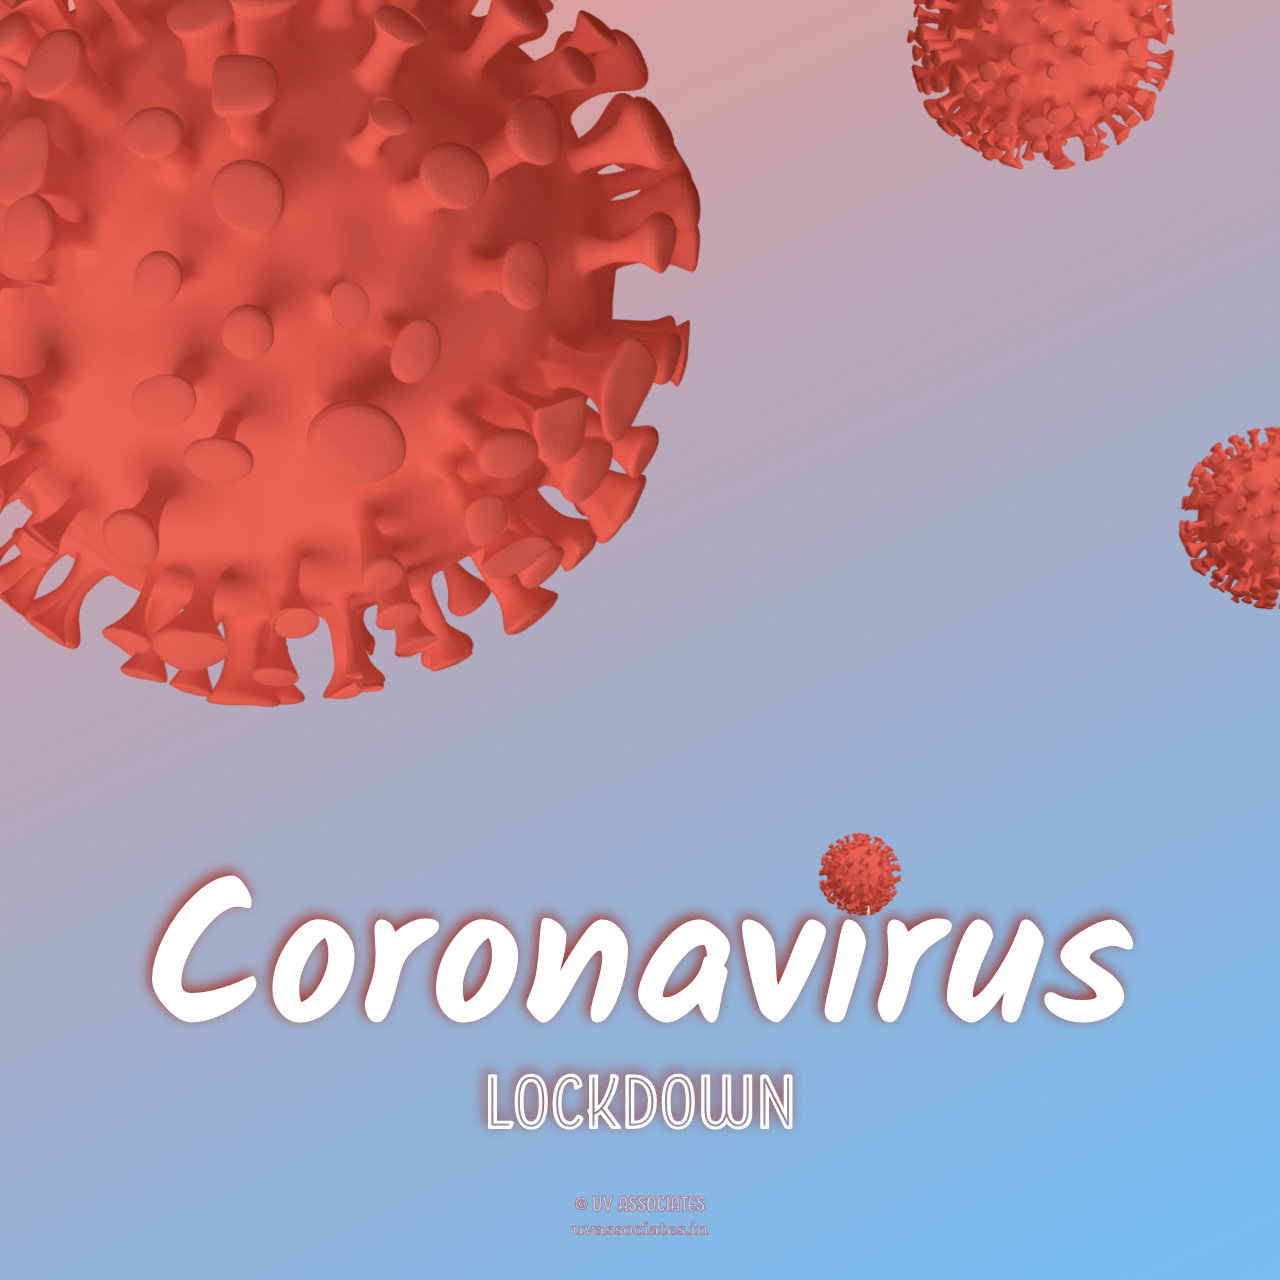 Coronavirus Lockdown Text on a Gradient Background featuring Coronavirus cells 